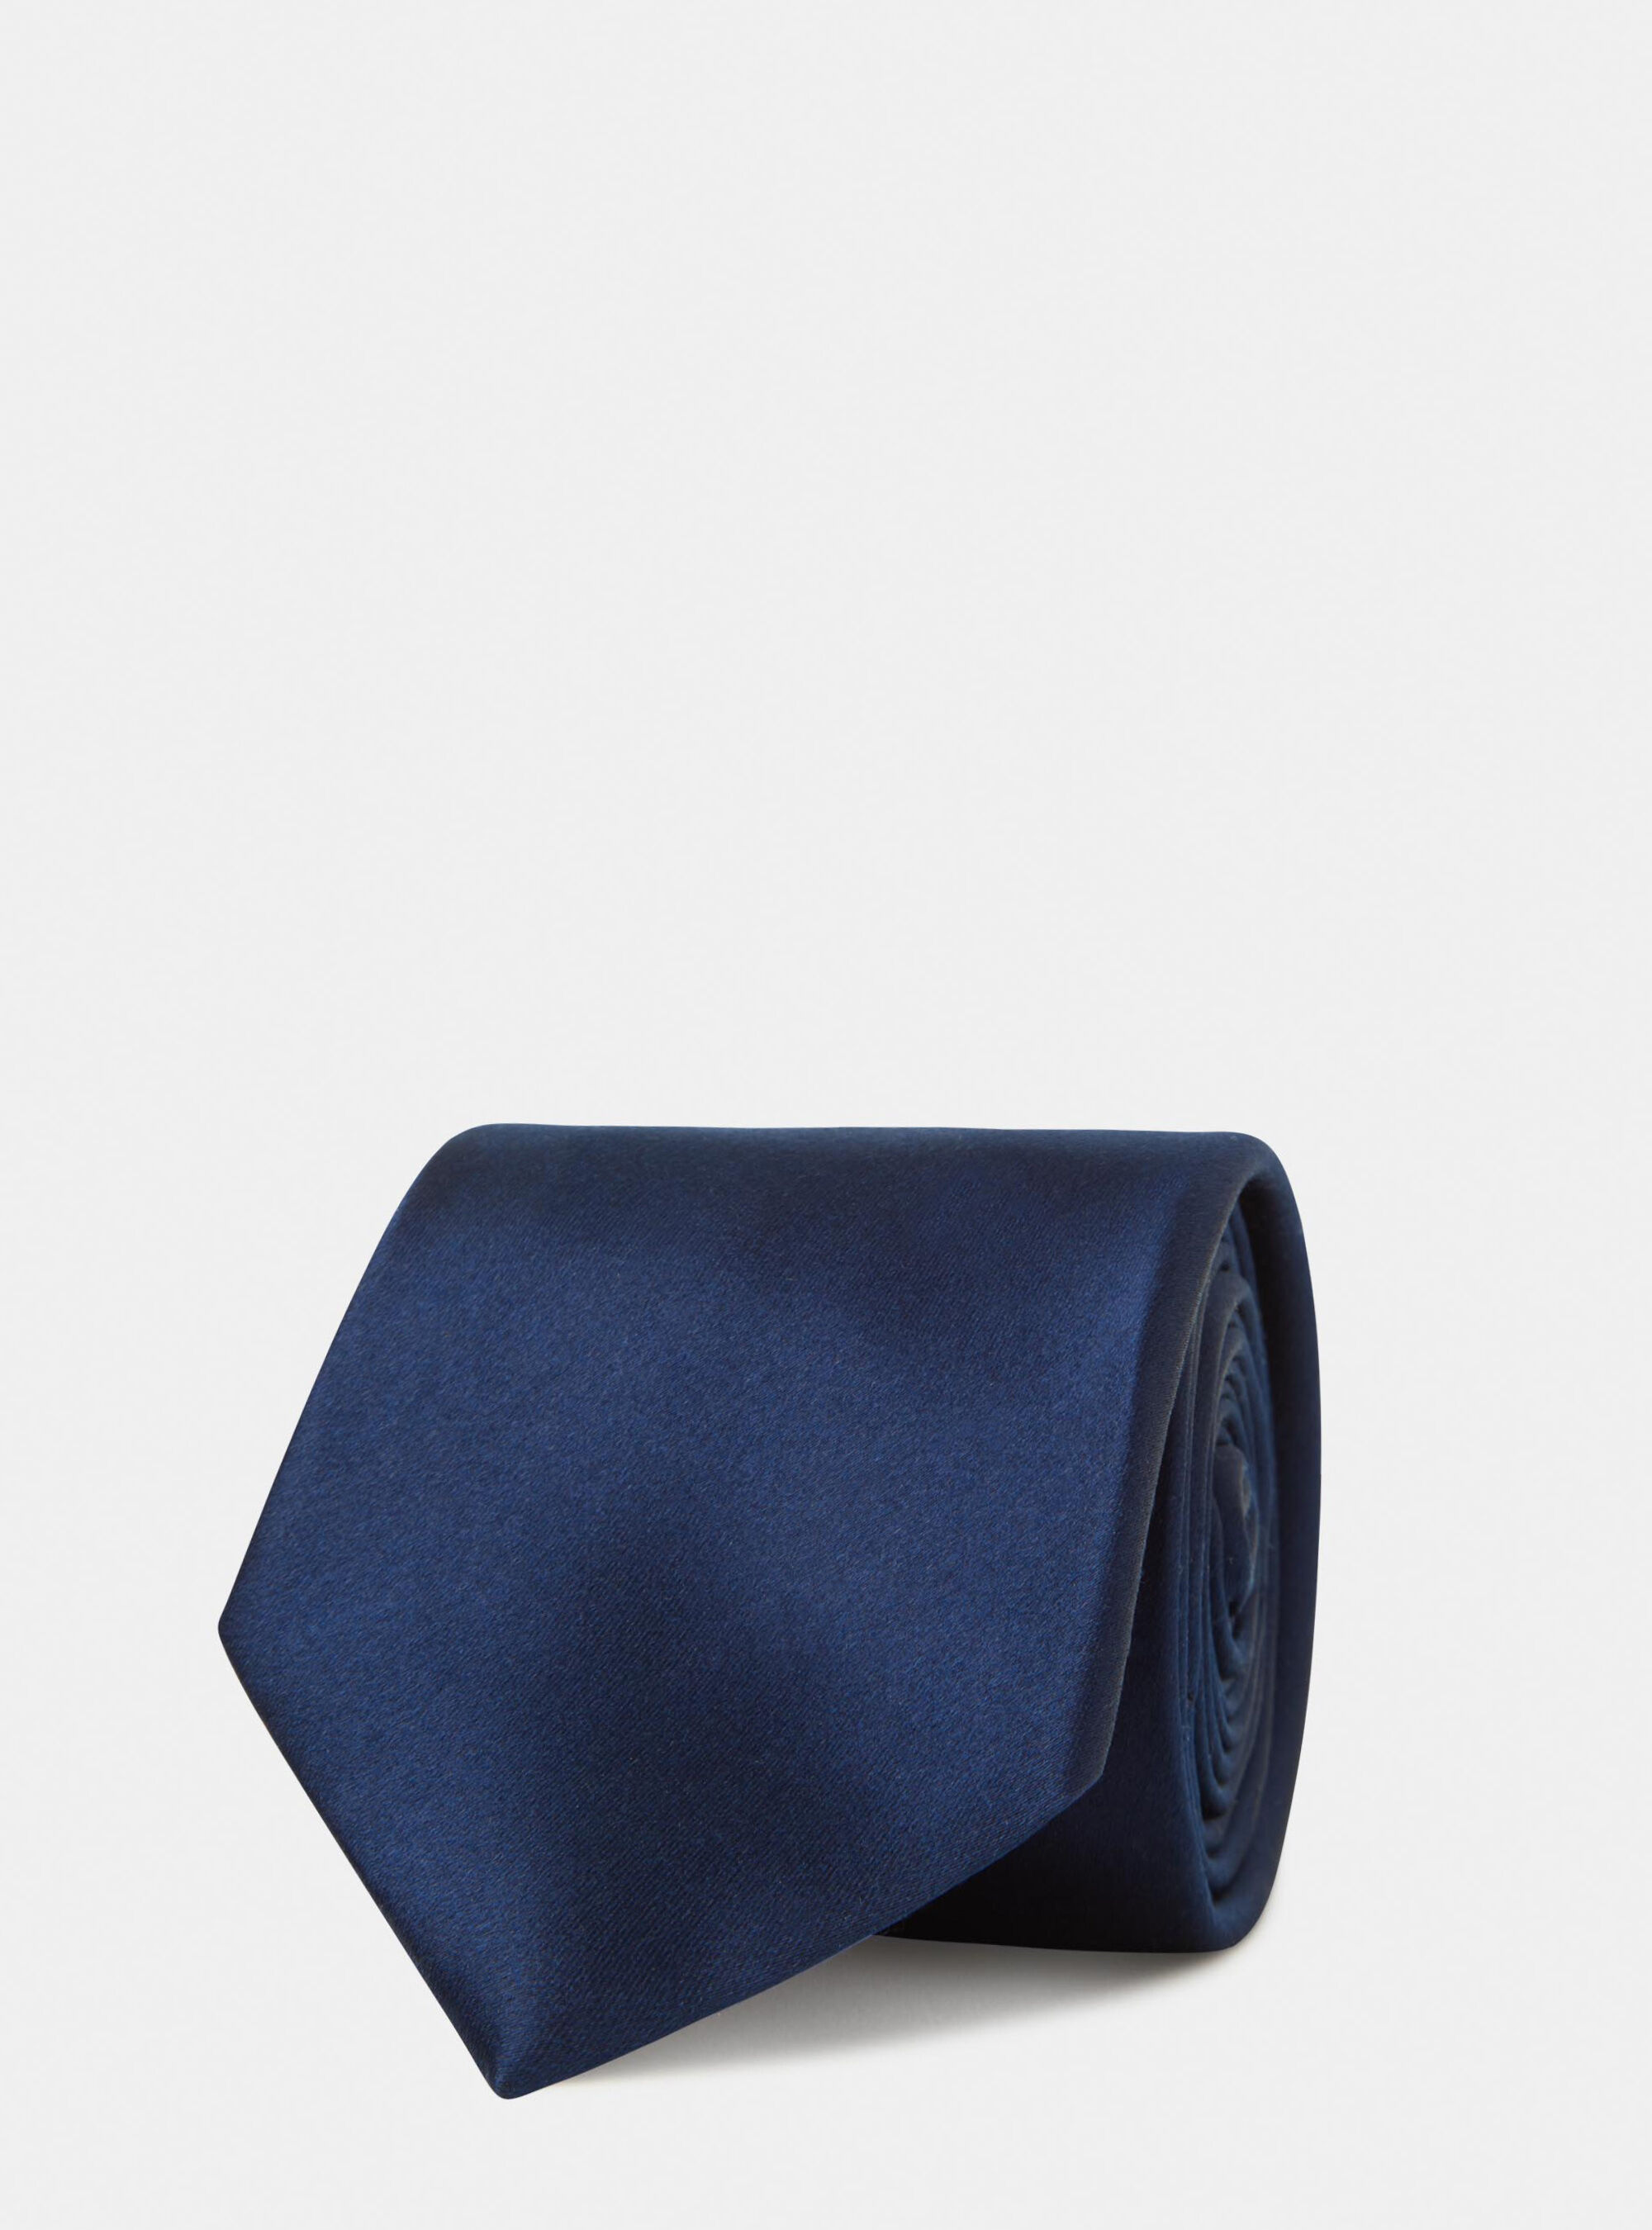 Uomo cravatta in seta stampa paperFerragamo in Seta da Uomo colore Blu Uomo Accessori da Cravatte da 